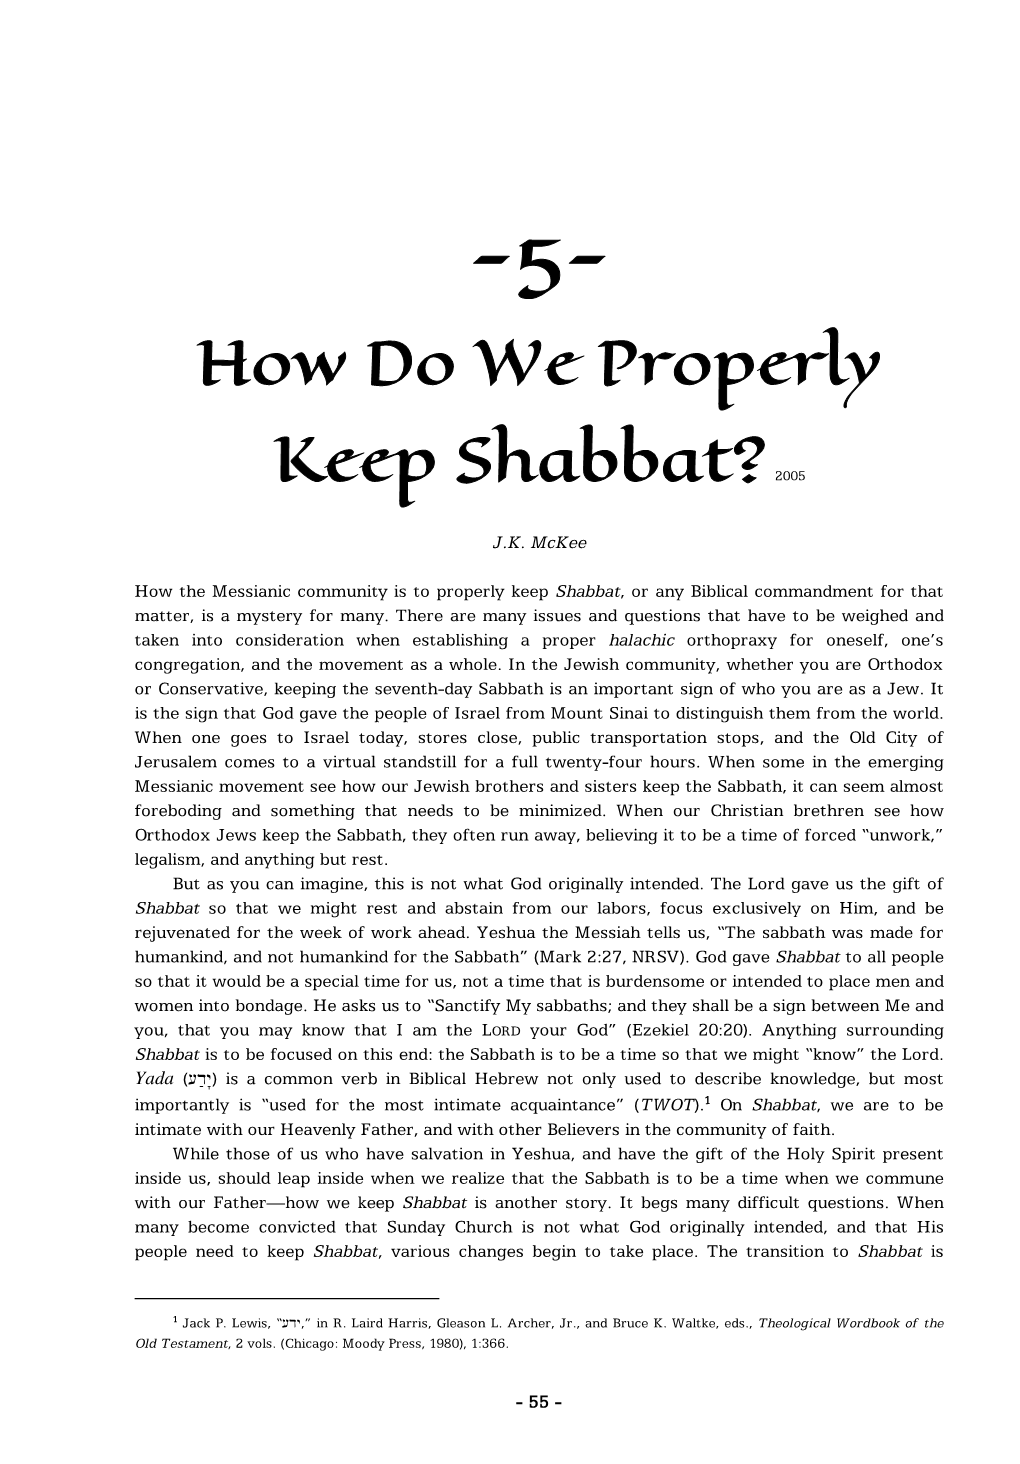 How Do We Properly Keep Shabbat?2005